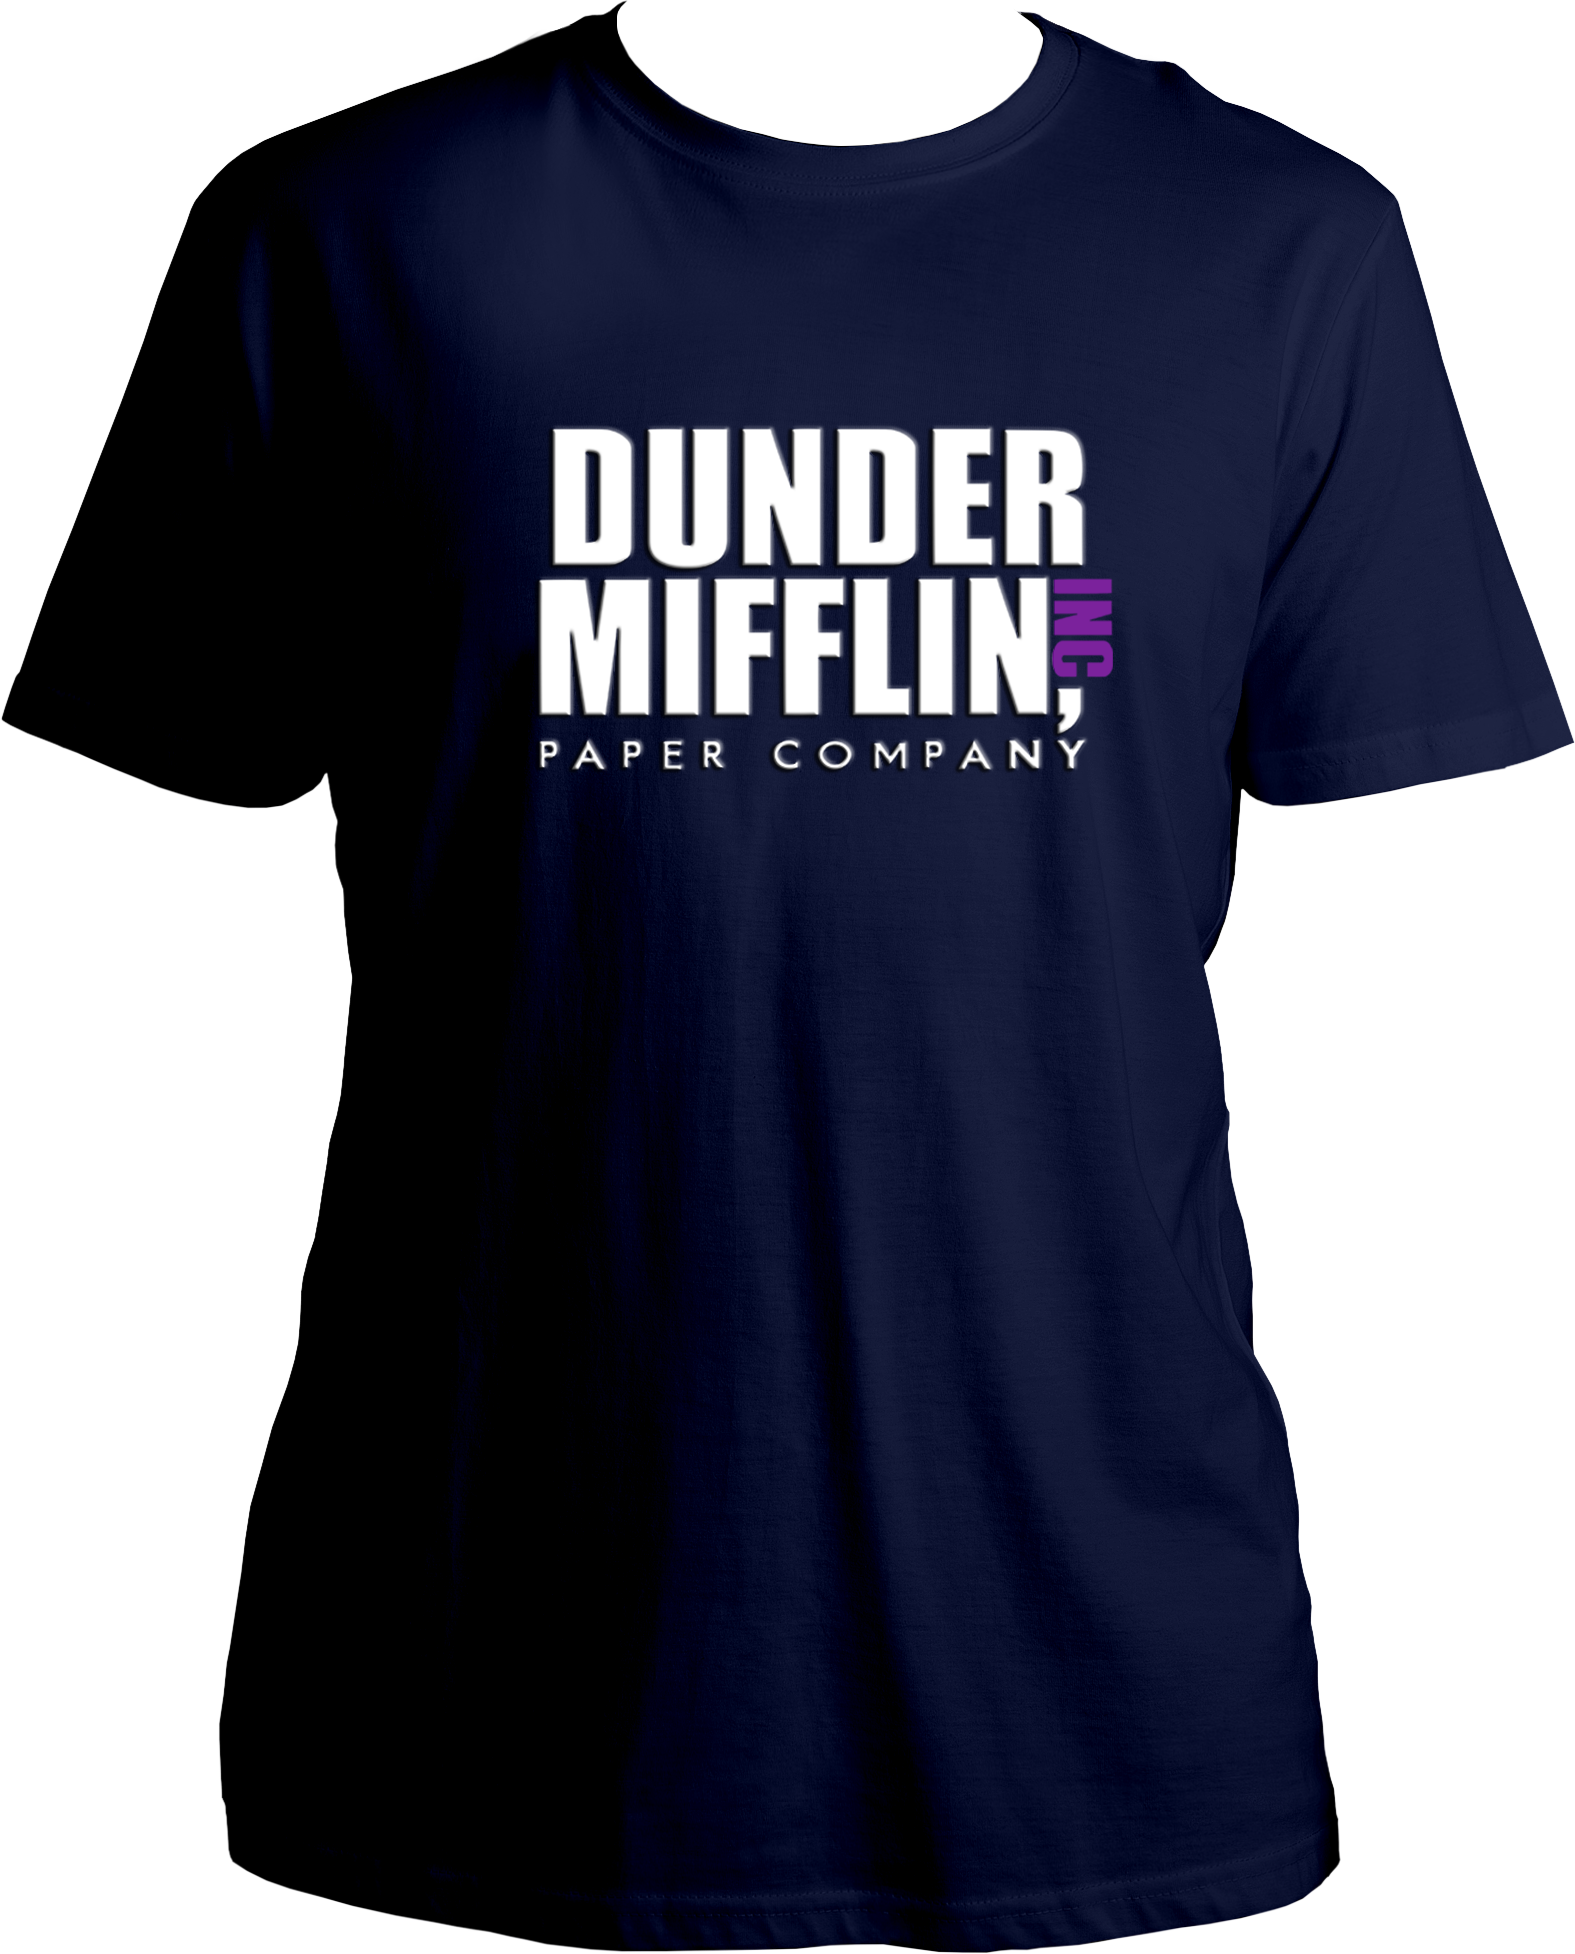 Dunder Mifflin Paper Company Inc. T-Shirt - Office Unisex T-Shirt